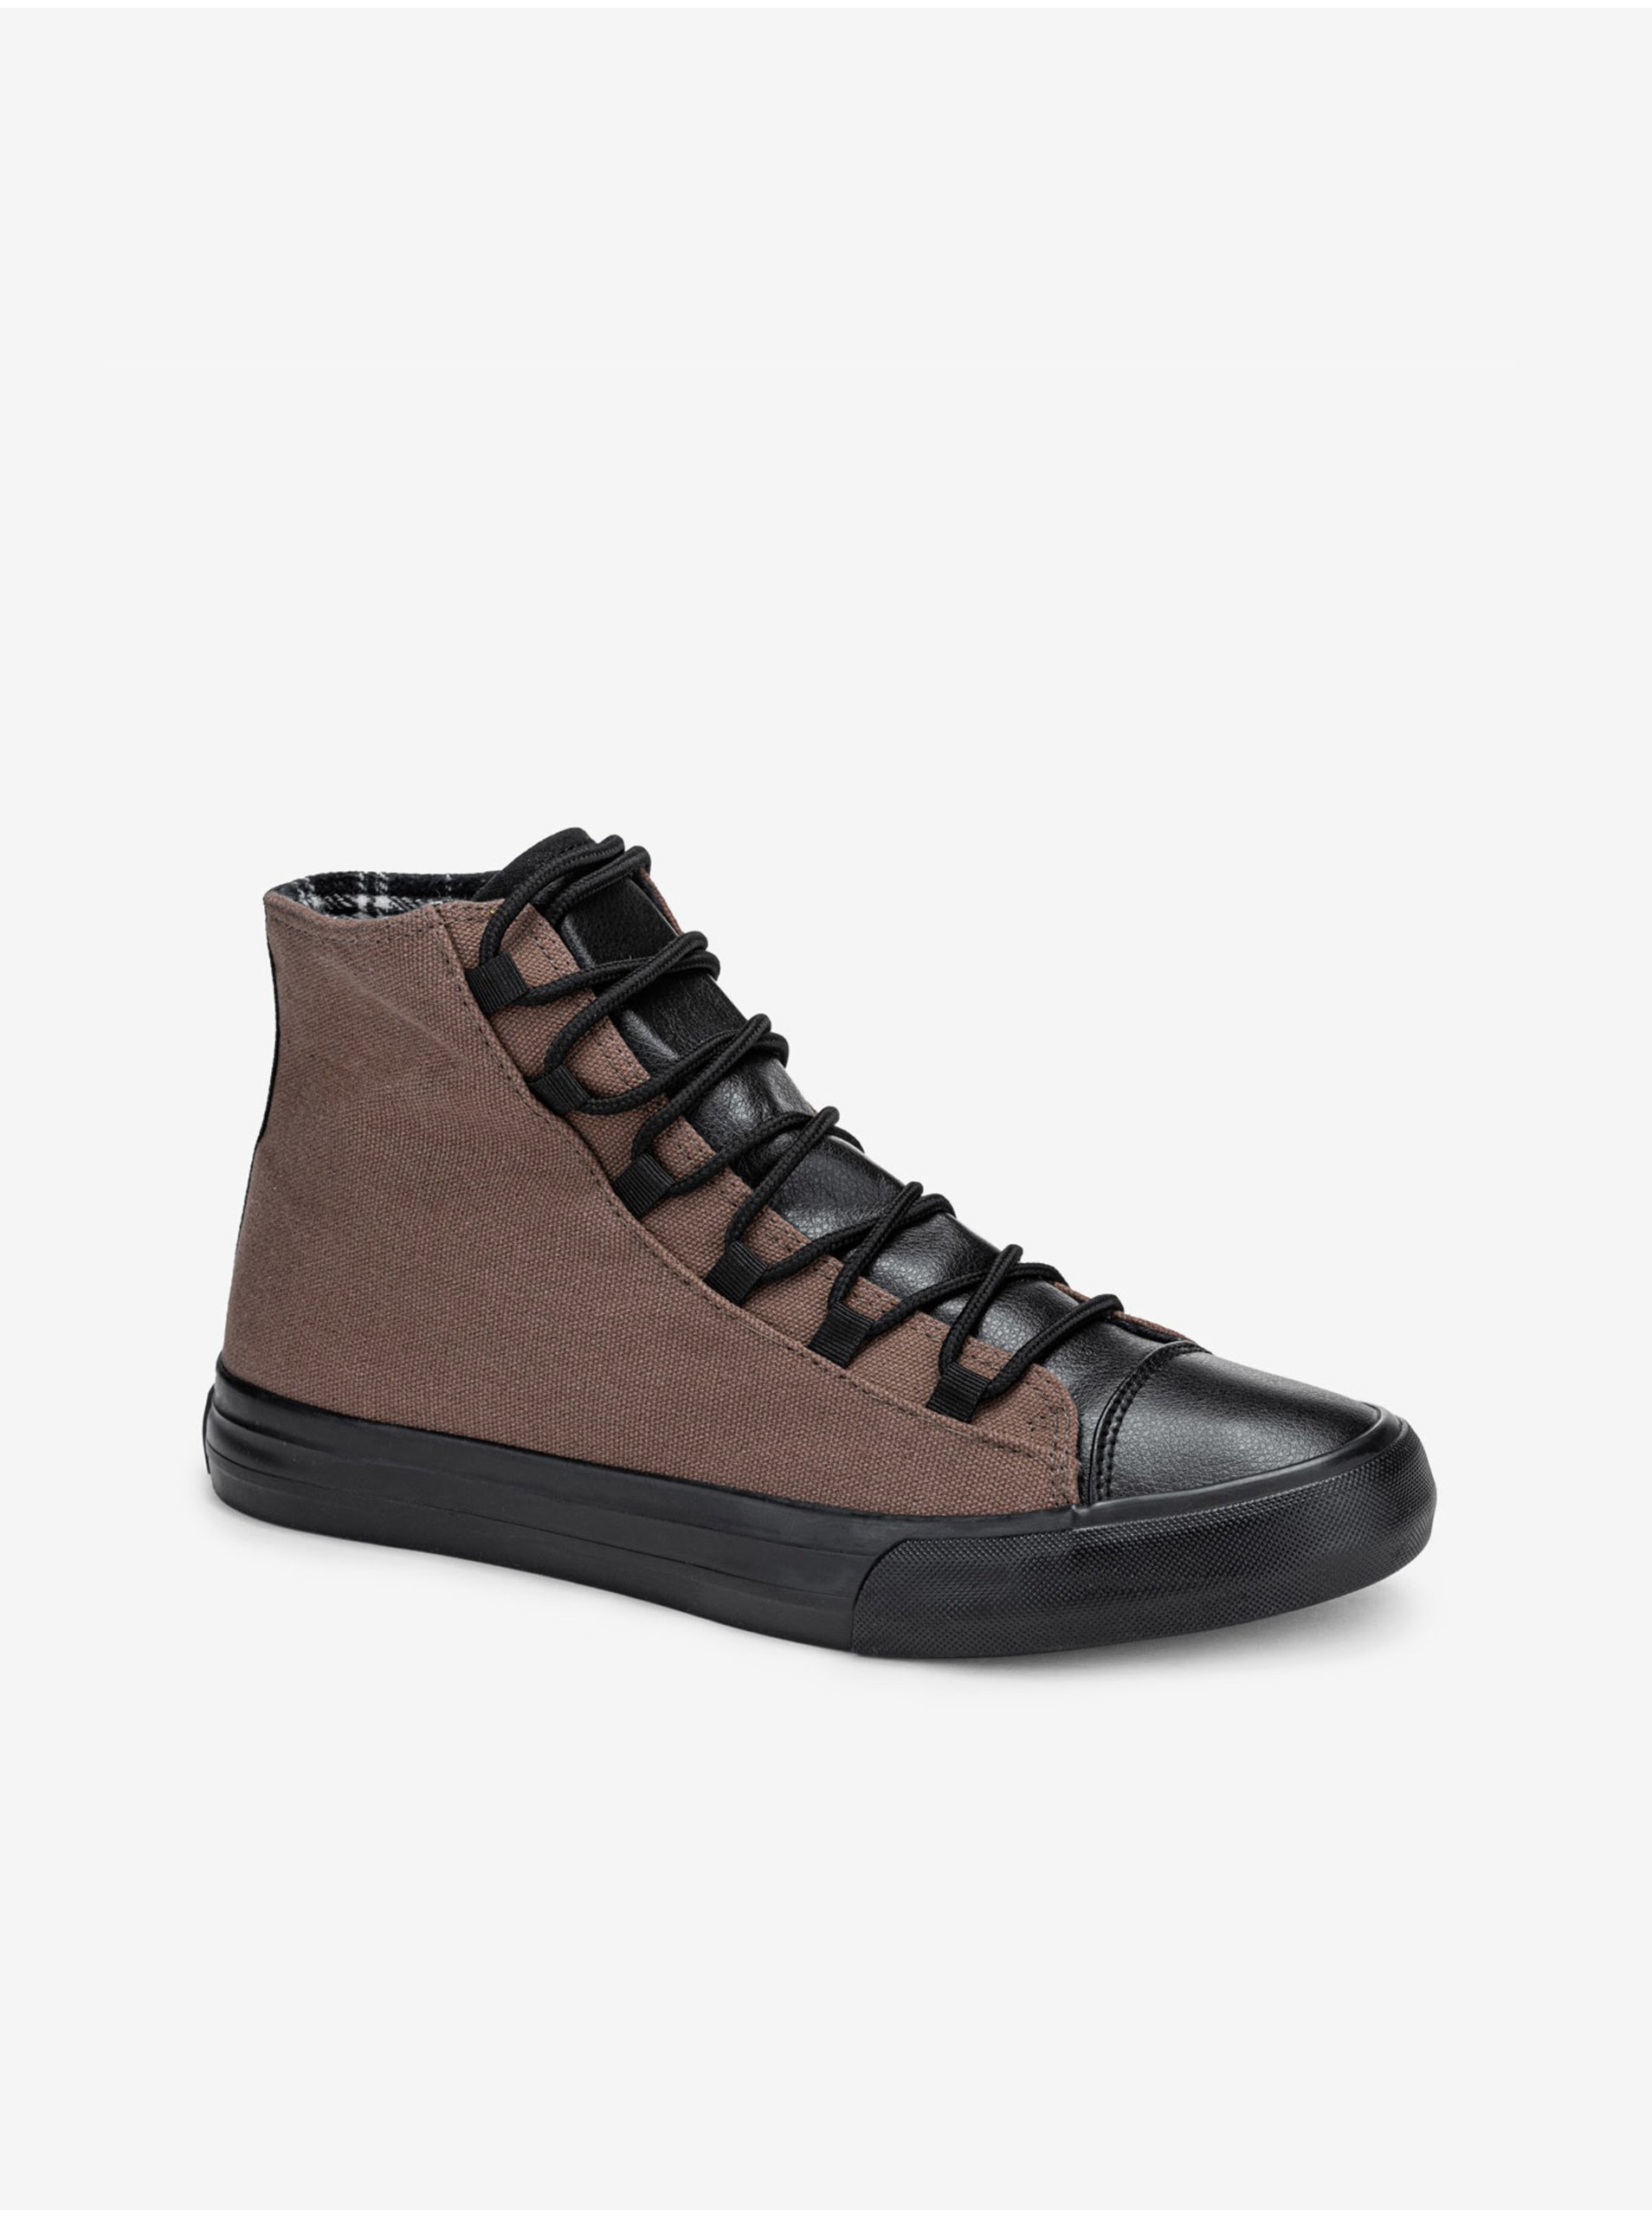 E-shop Černo-hnědé pánské sneakers boty Ombre Clothing T378